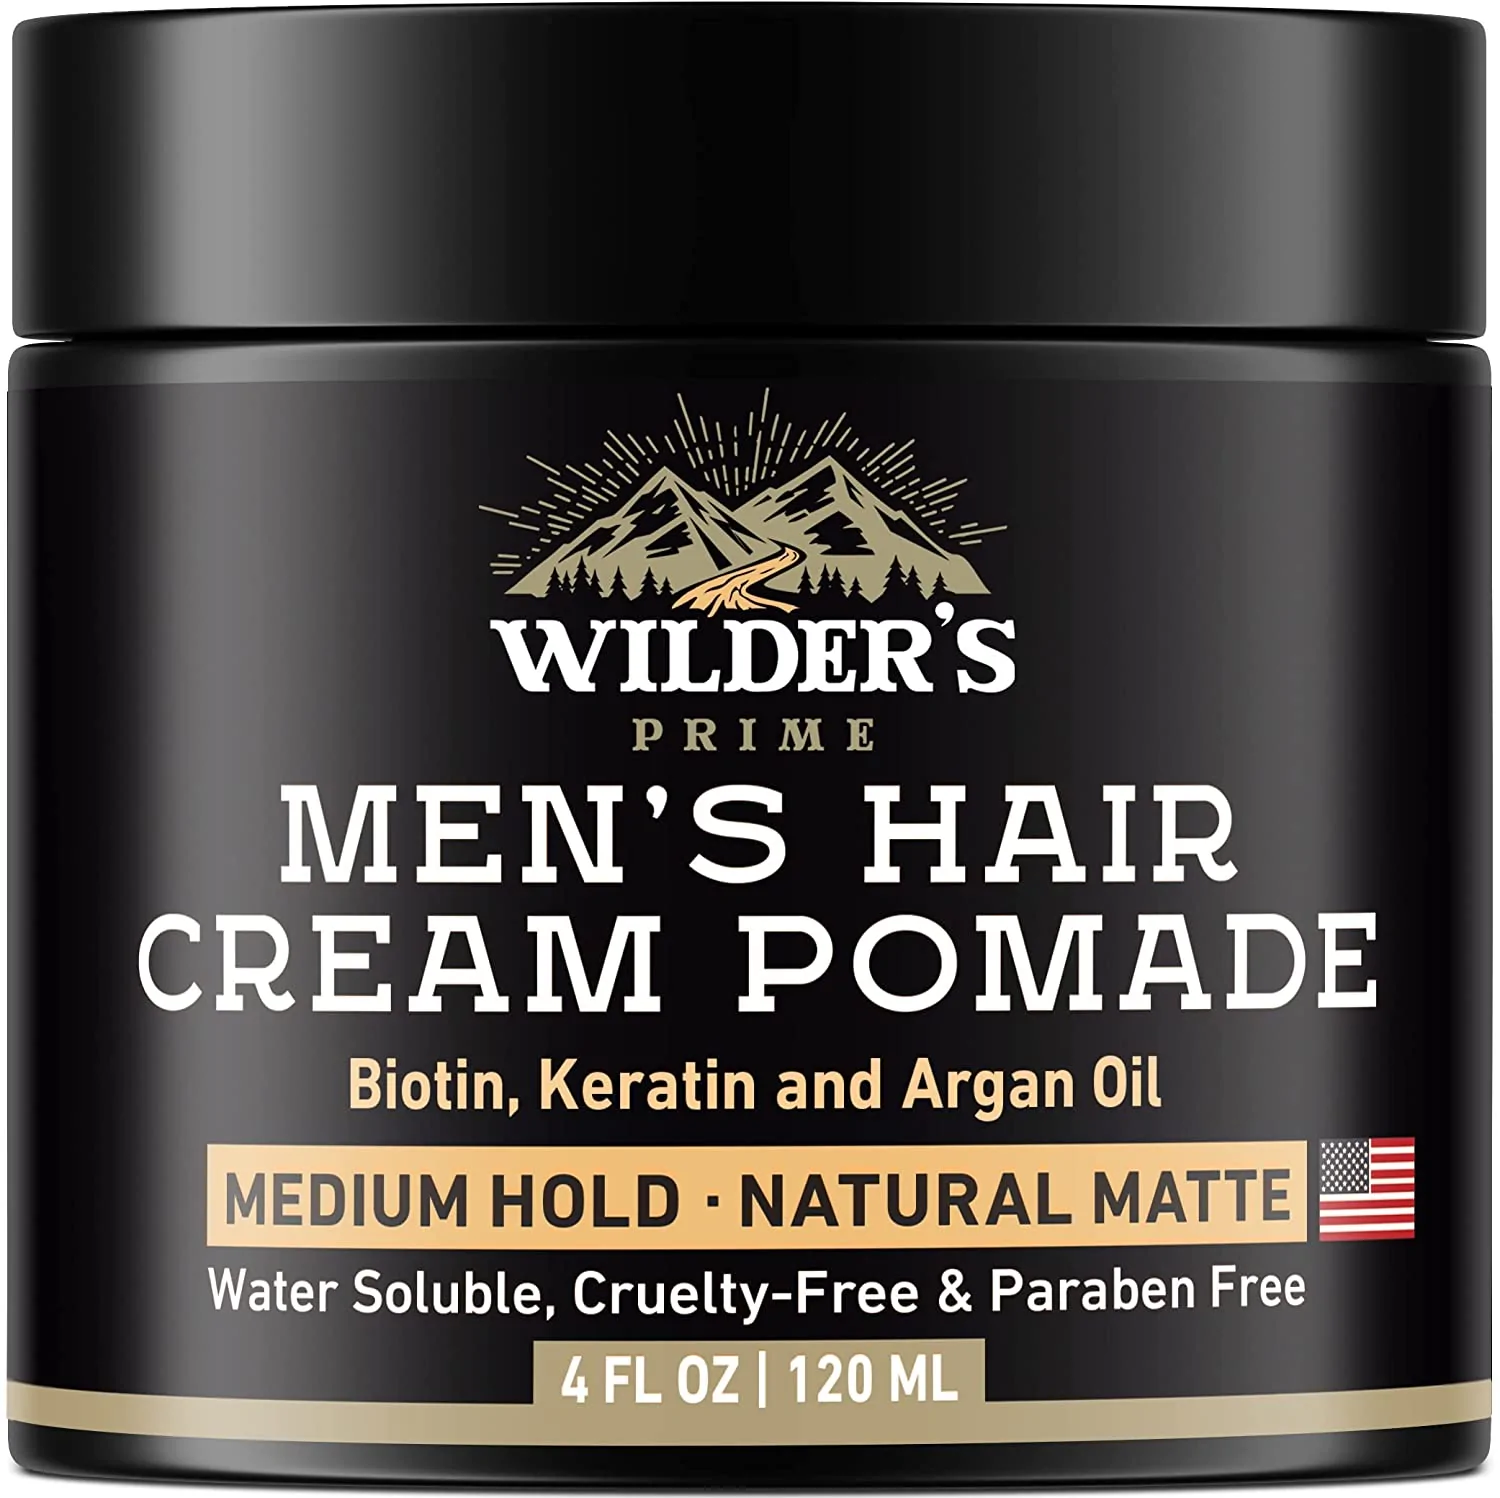 Wilder's Prime Men's Hair Cream Pomade